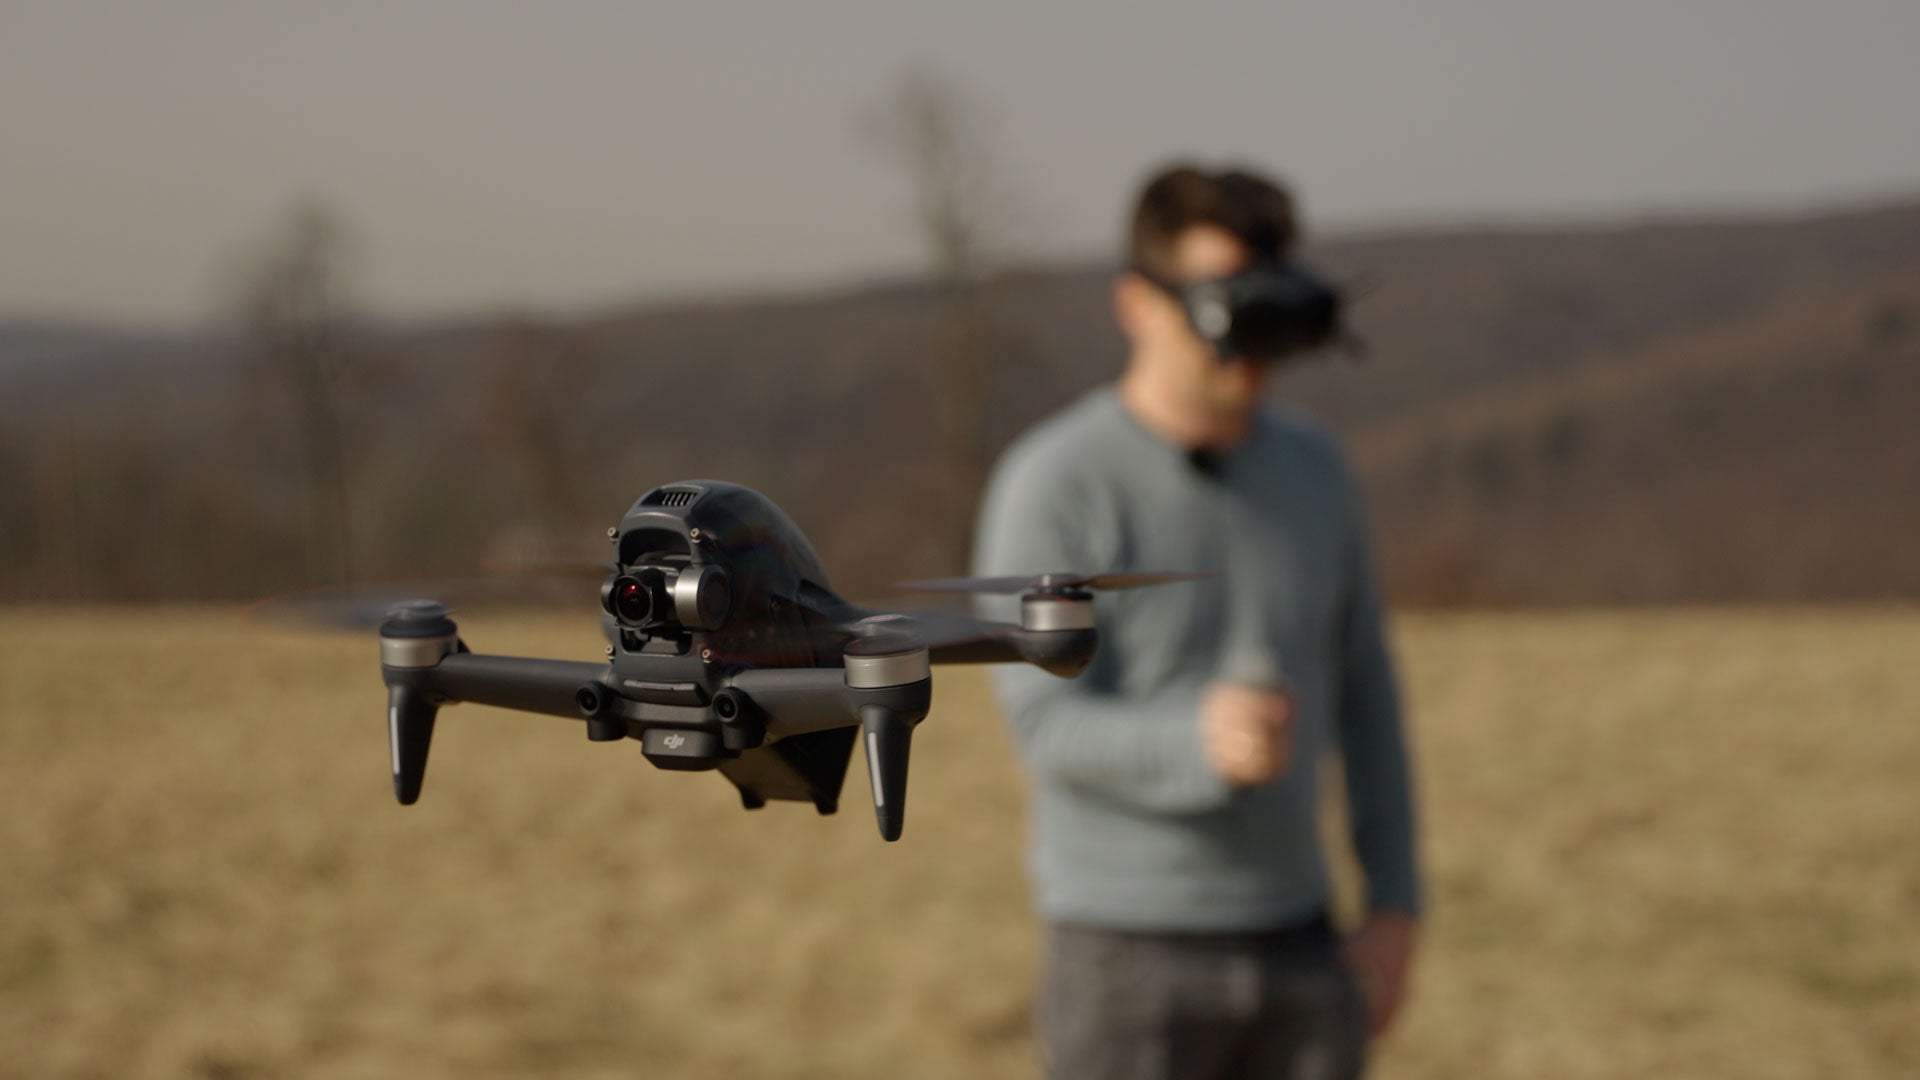 FPV drone hover